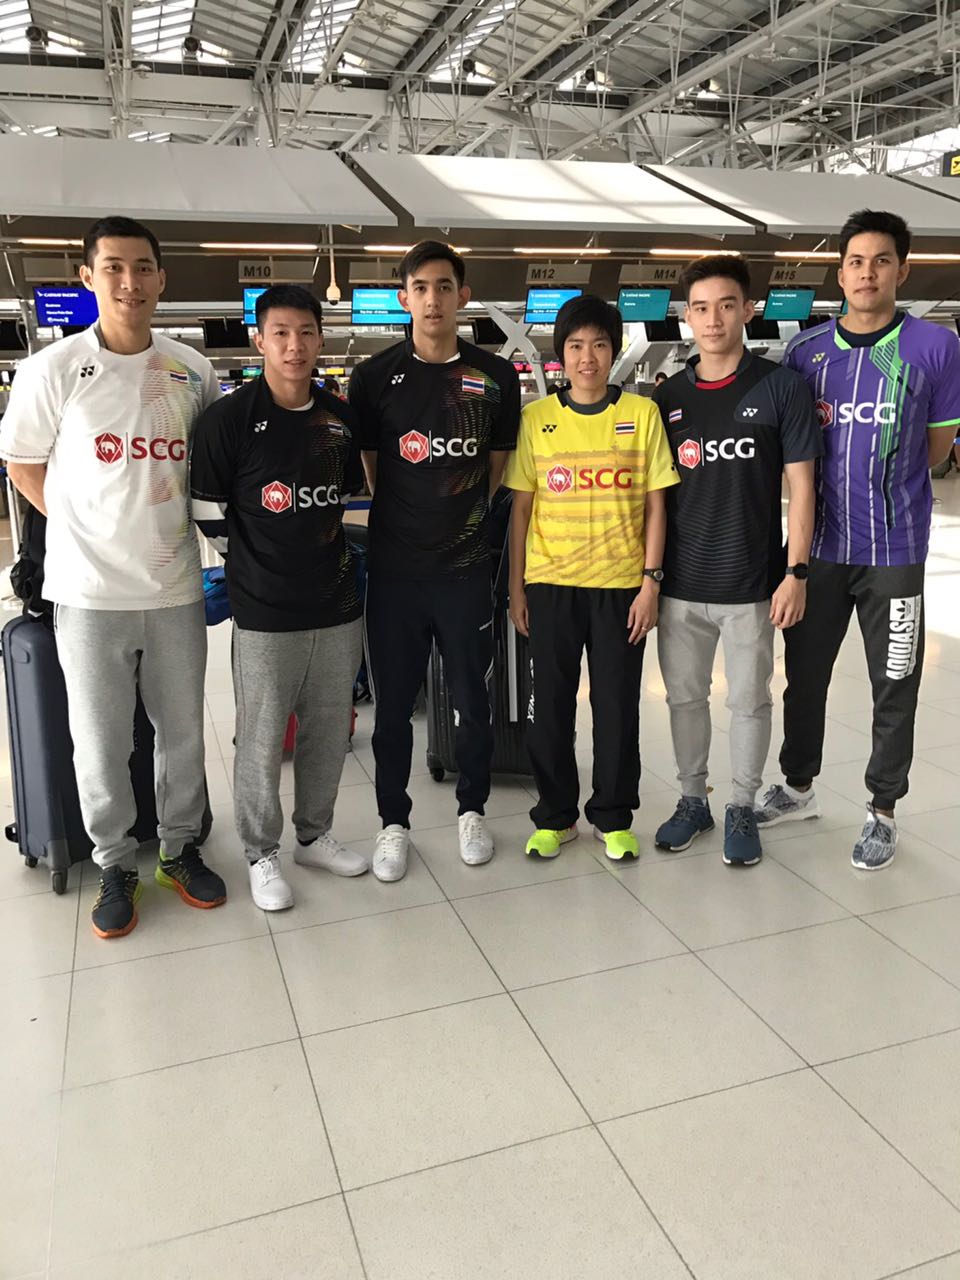 ทัพนักกีฬาไทยเดินทางไปเข้าร่วม การแข่งขันแบดมินตัน รายการ China Masters 2017